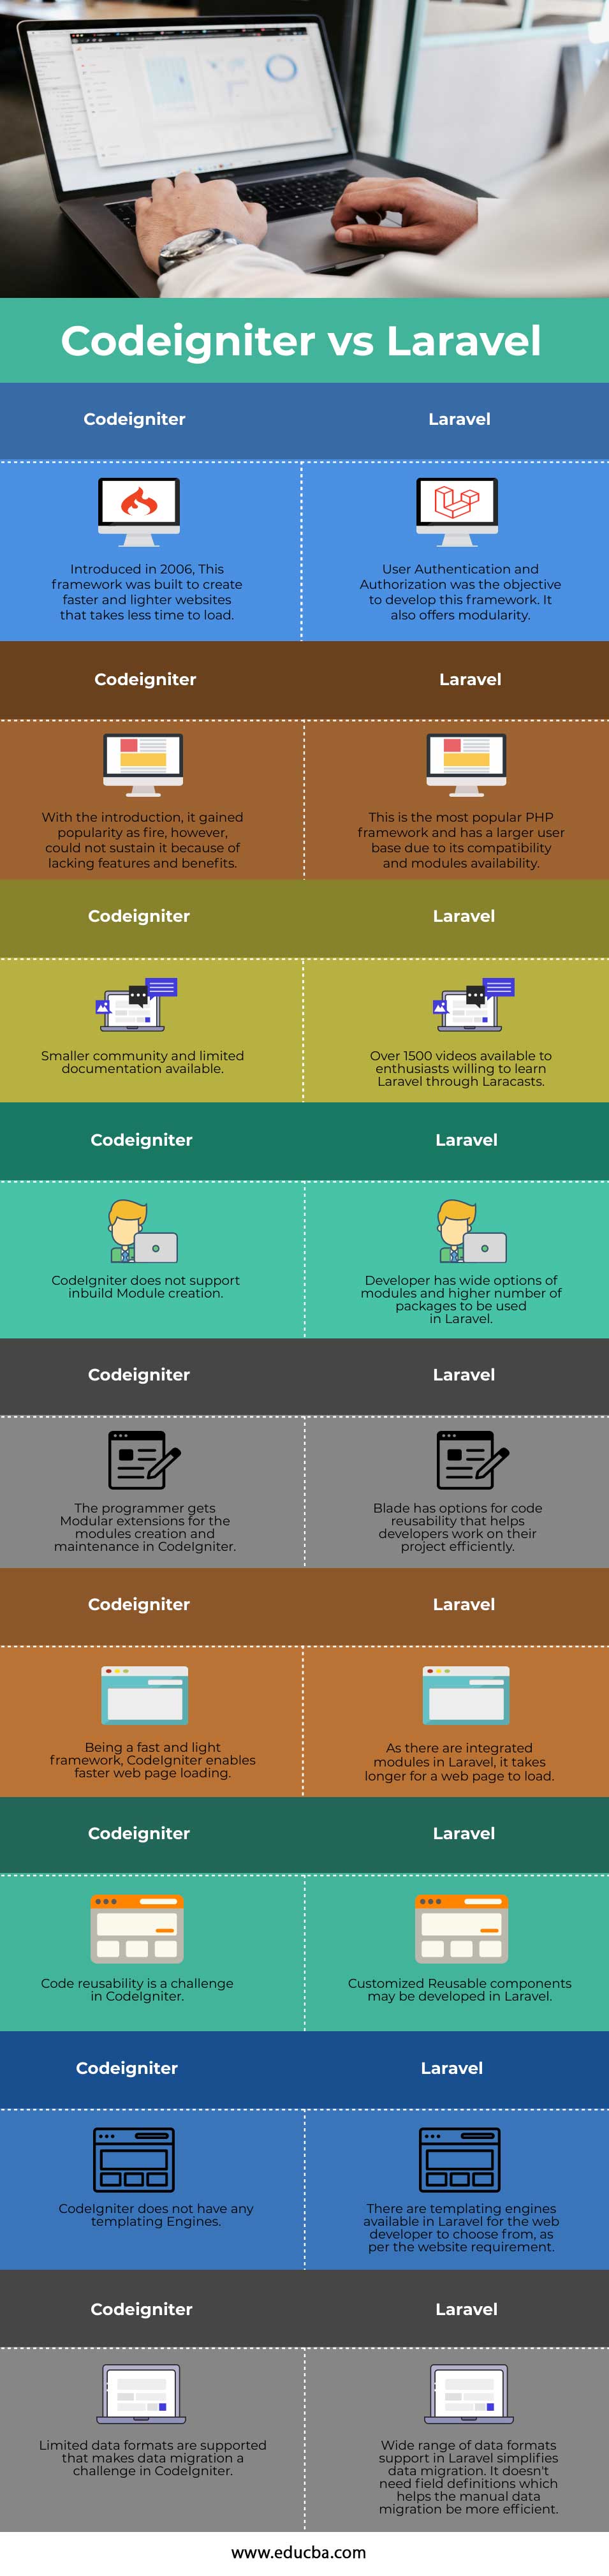 Codeigniter-vs-Laravel-info